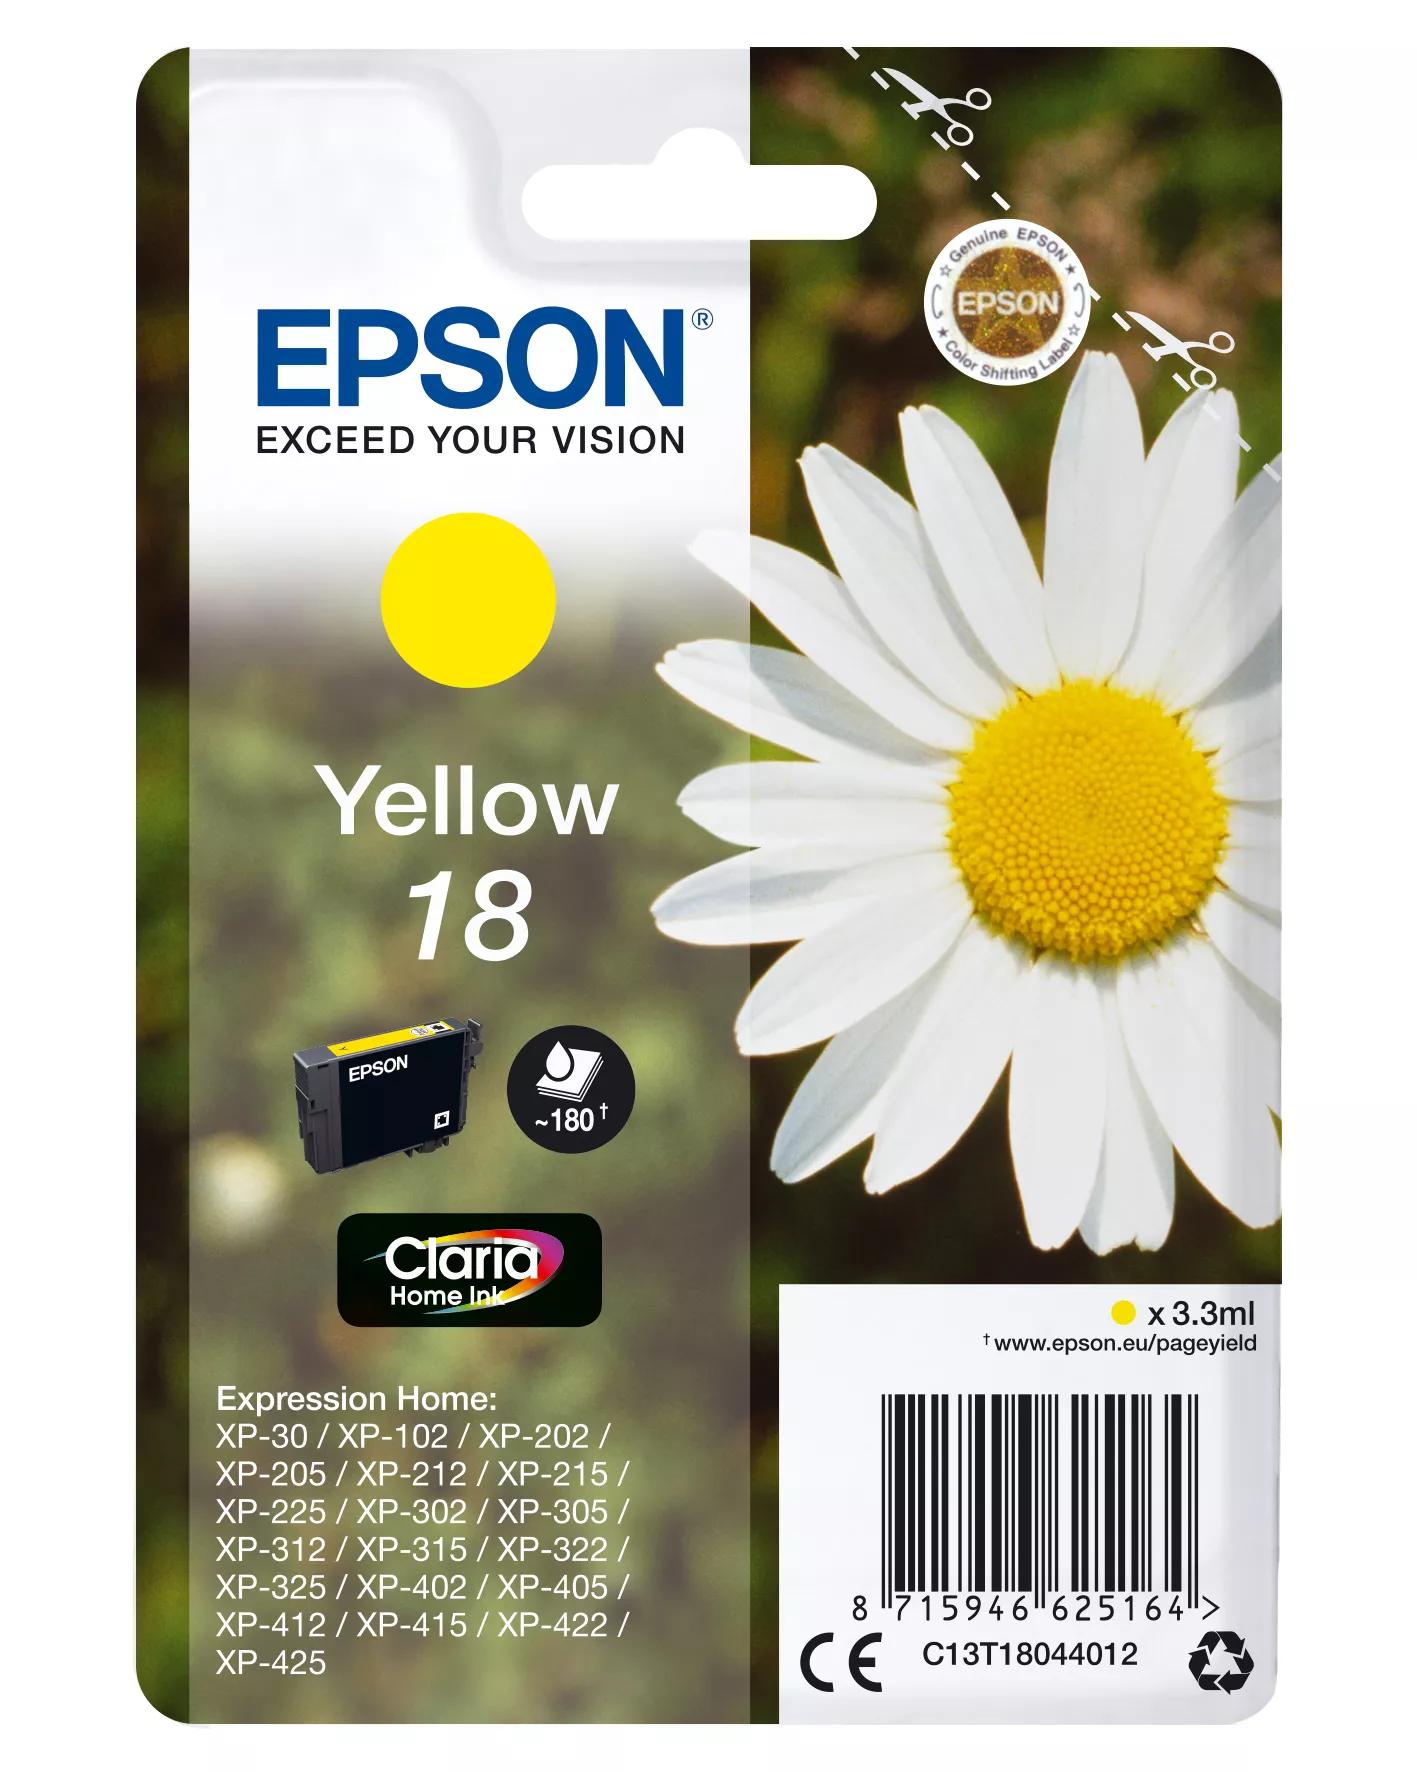 Achat EPSON 18 cartouche dencre jaune capacité standard 3.3ml sur hello RSE